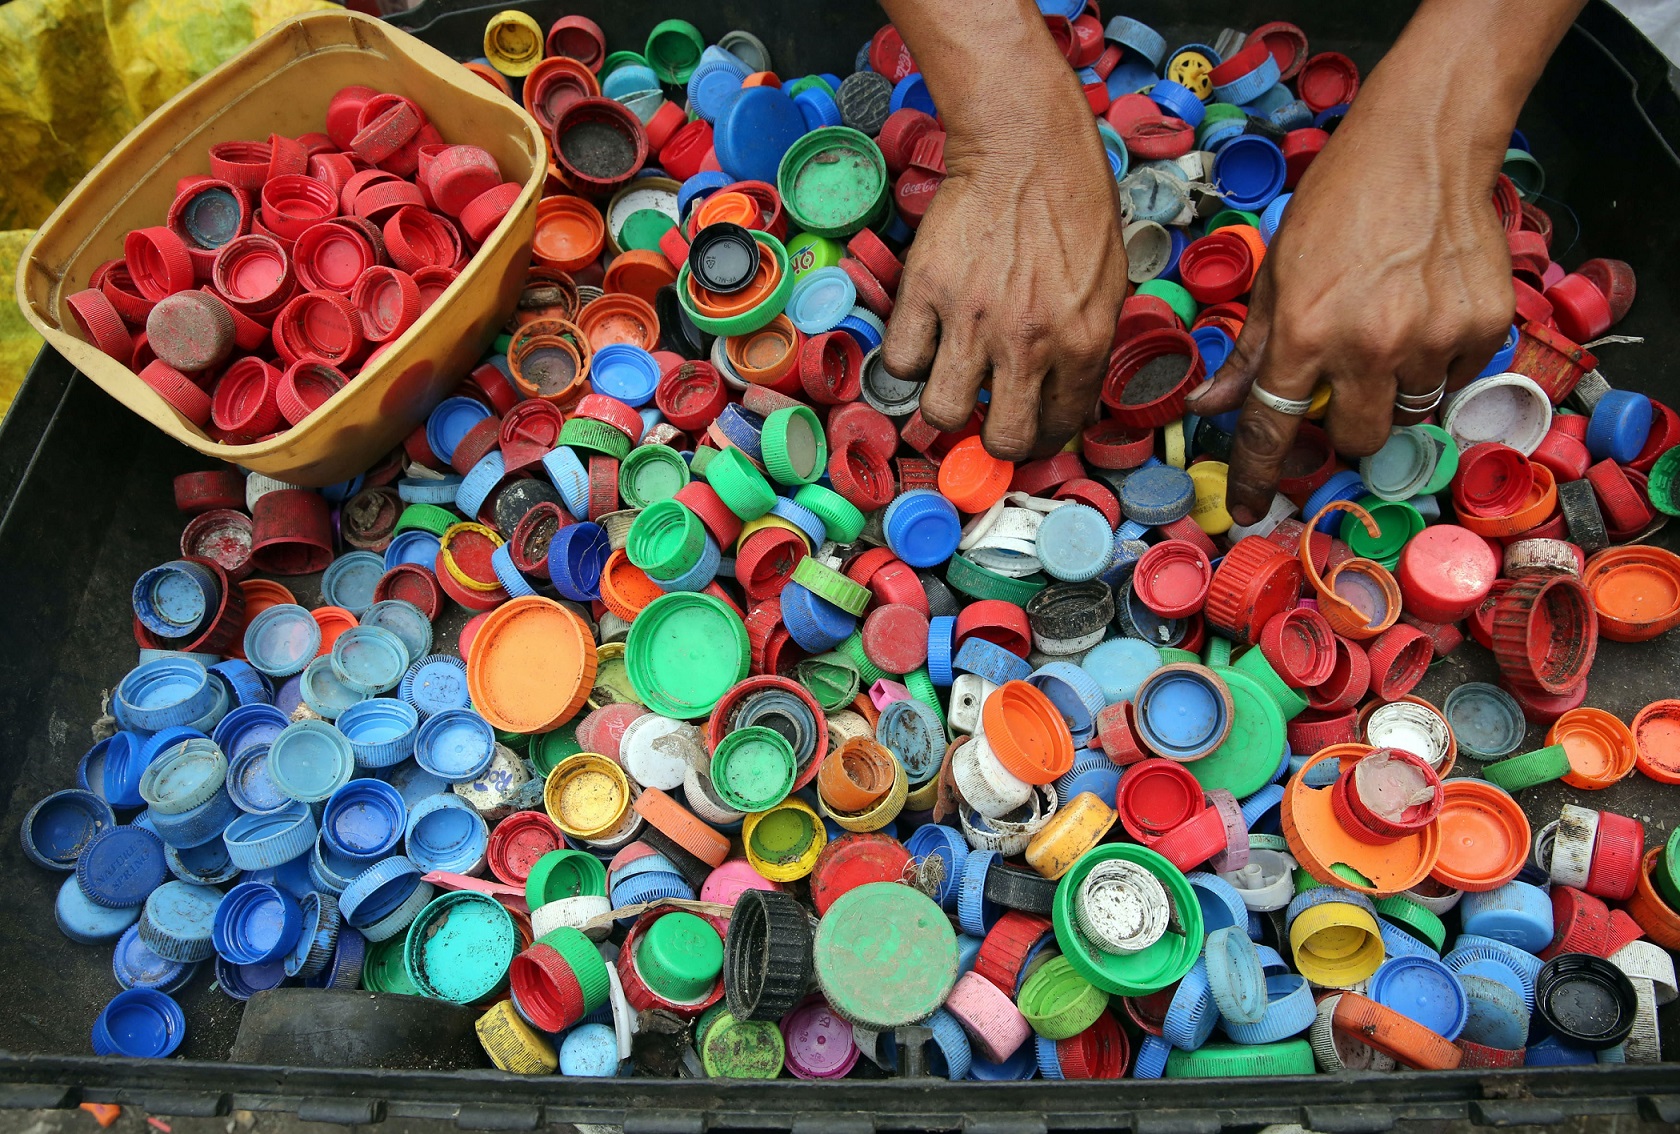  Manos de una persona separando tapas de botellas de plástico